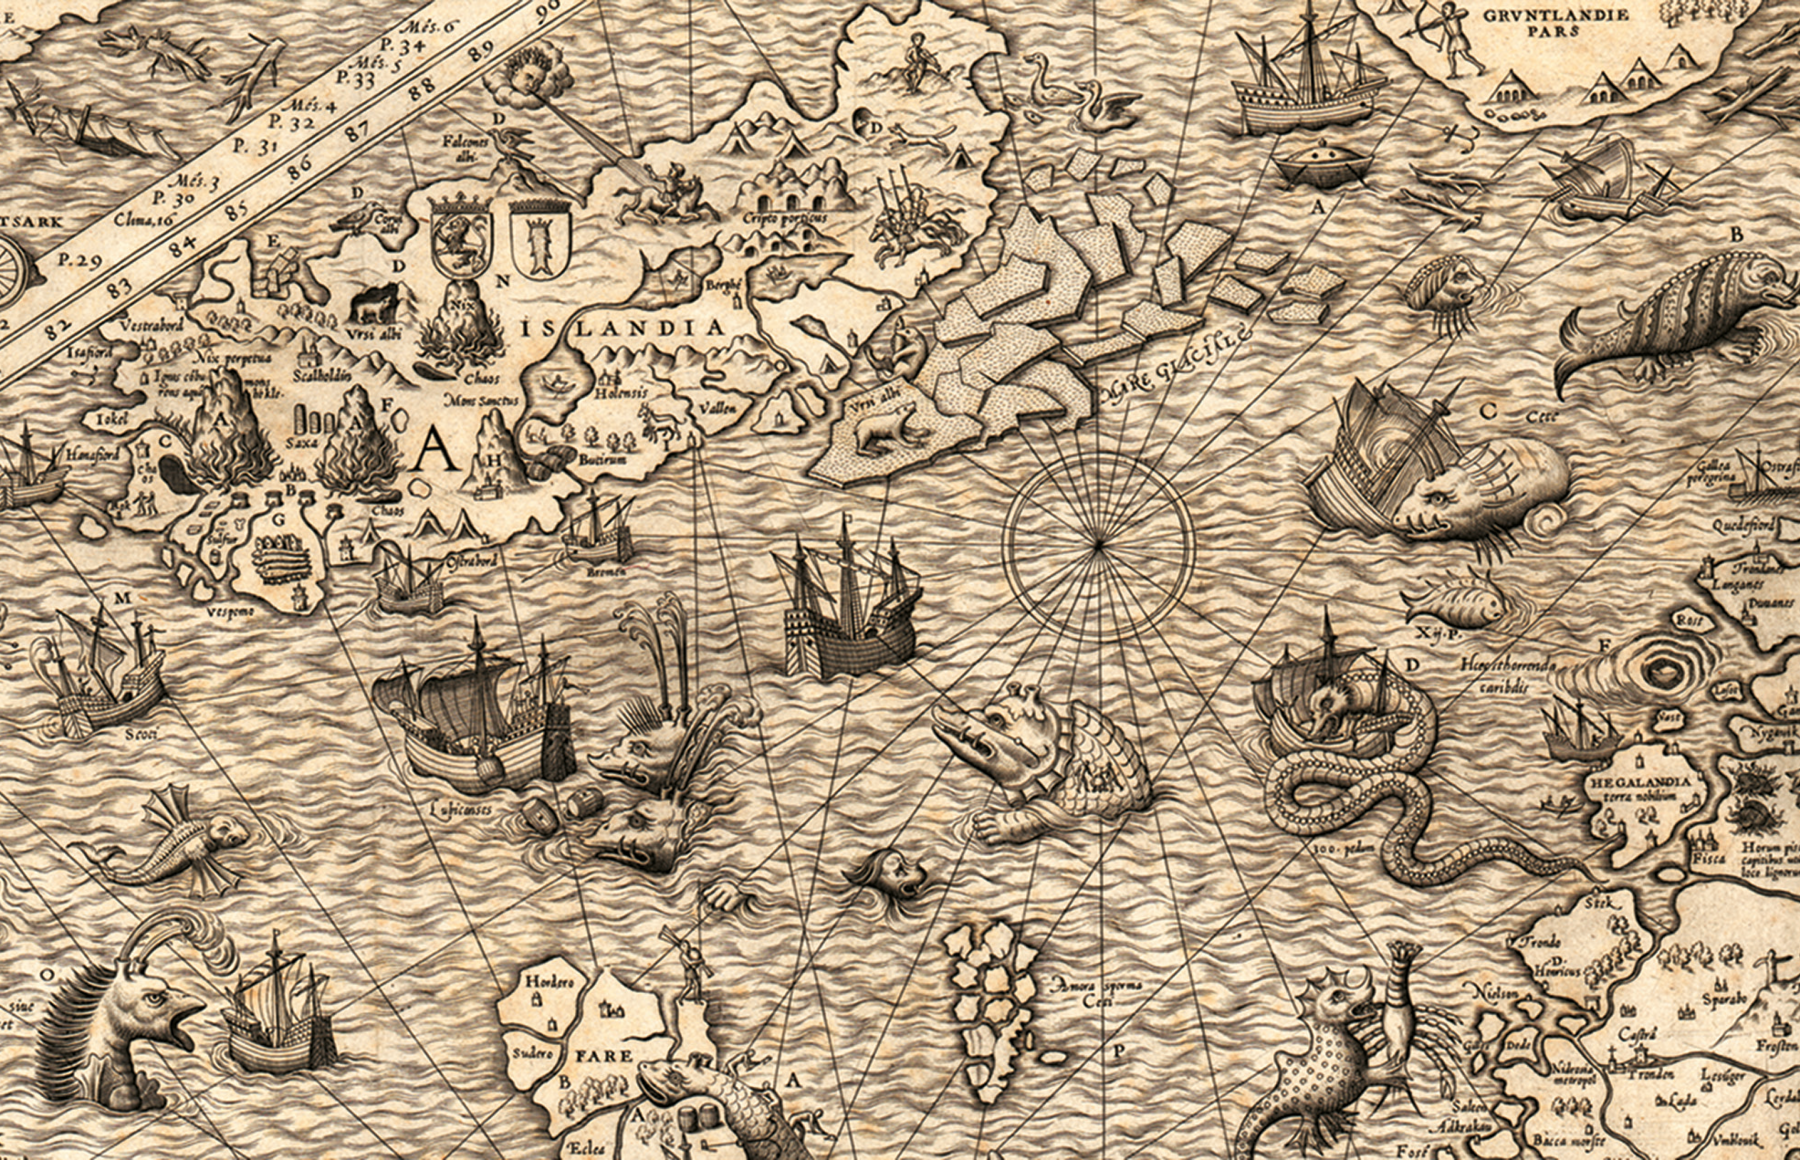 Ilustração em tom sépia. Mapa destacando algumas porções de terra e um oceano com embarcações e criaturas marinhas. Algumas delas são maiores que as embarcações.